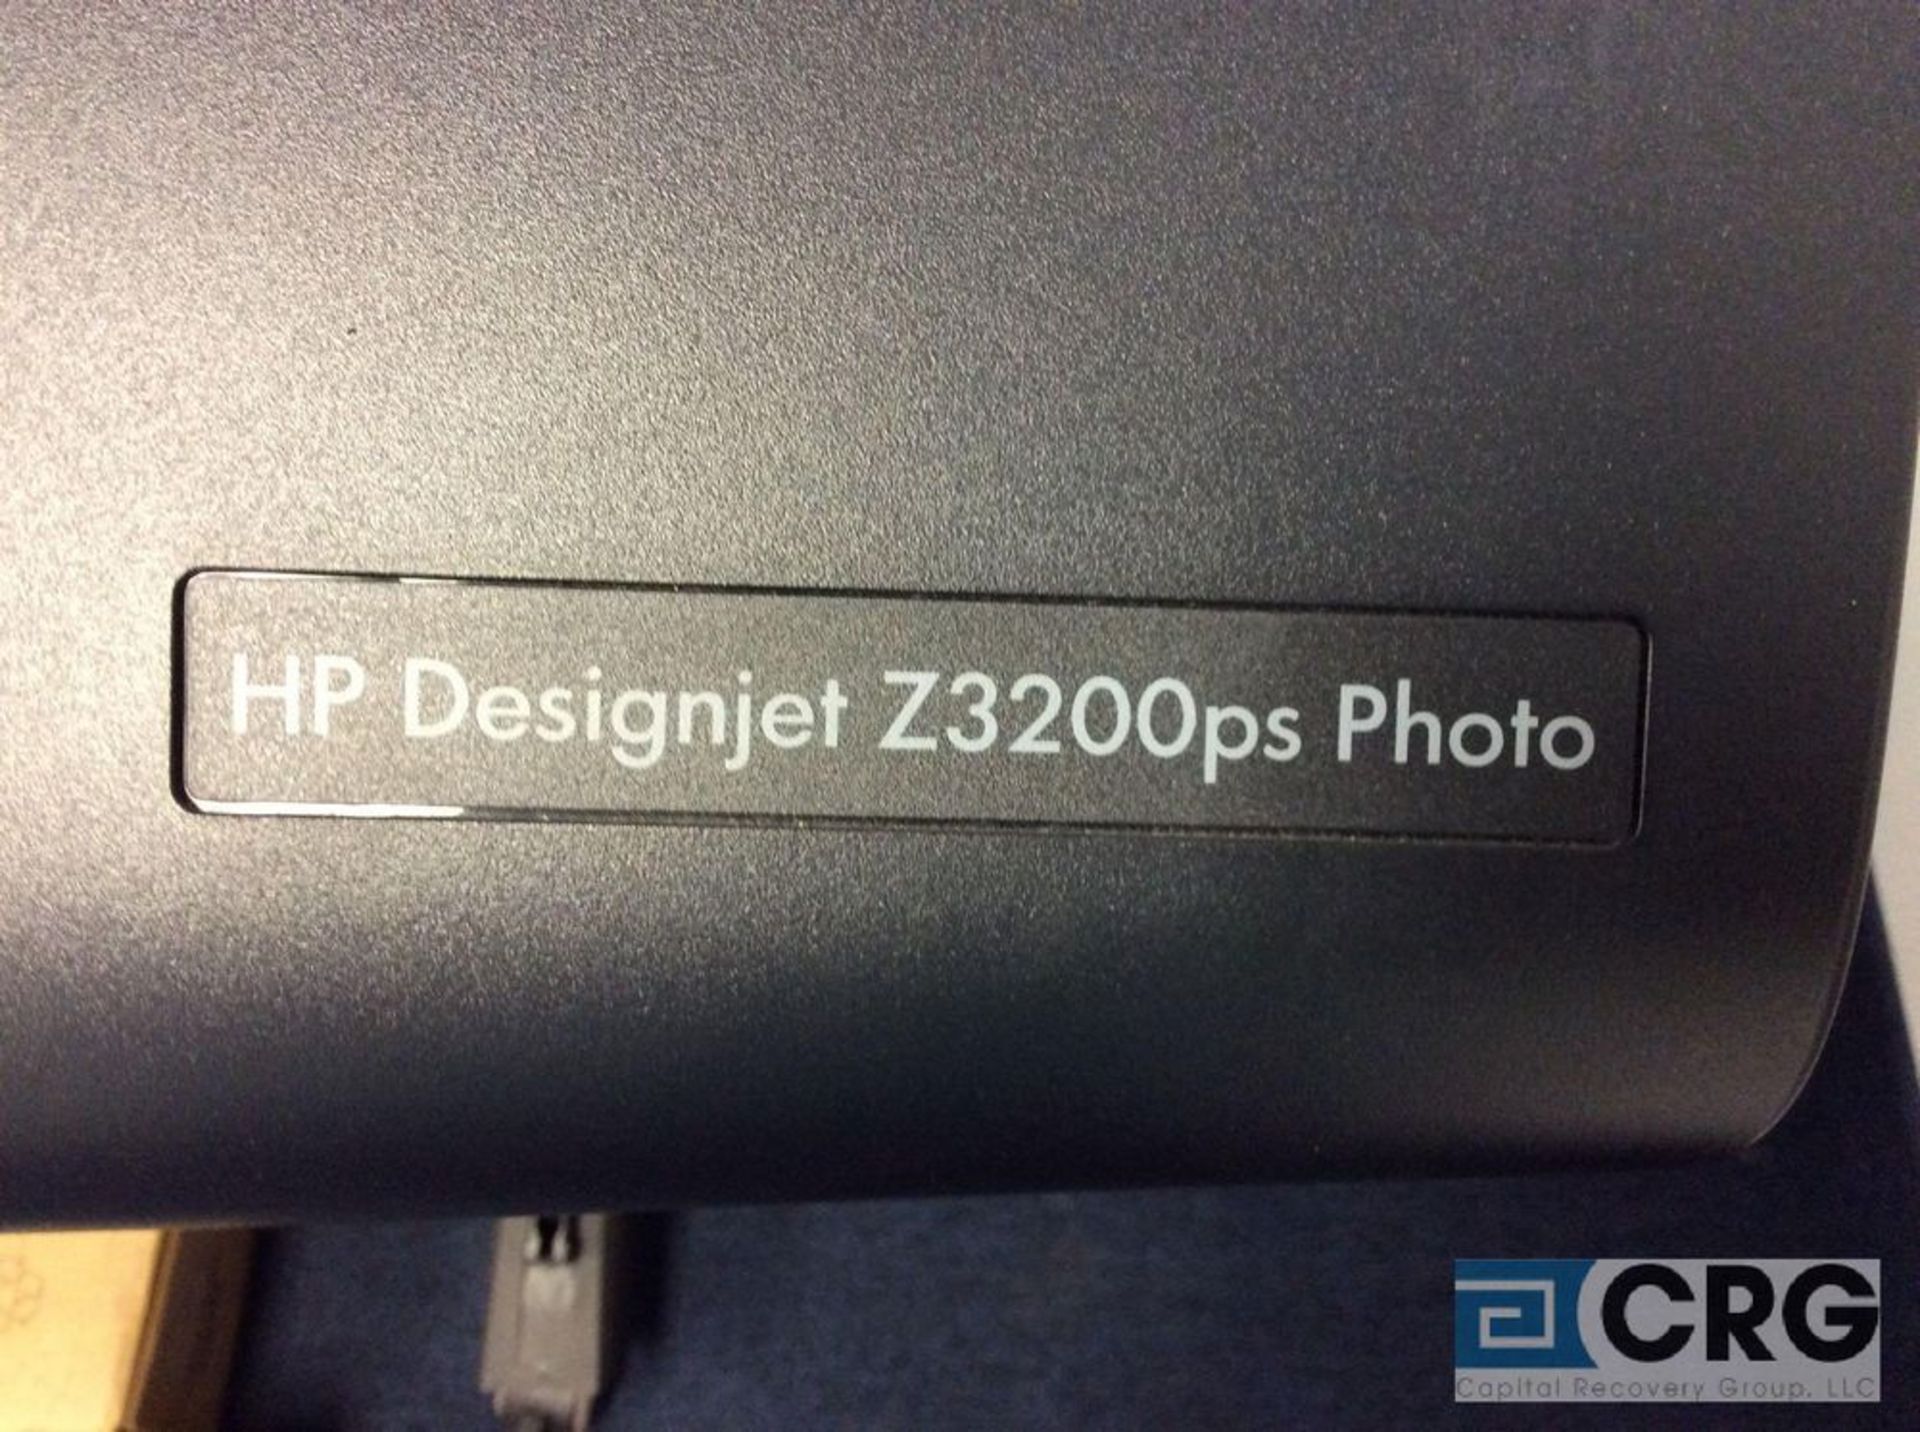 FHP Design Jet Z3200PS Photo, color, Large/Wide format Inkjet Plotter Printer - Image 2 of 5